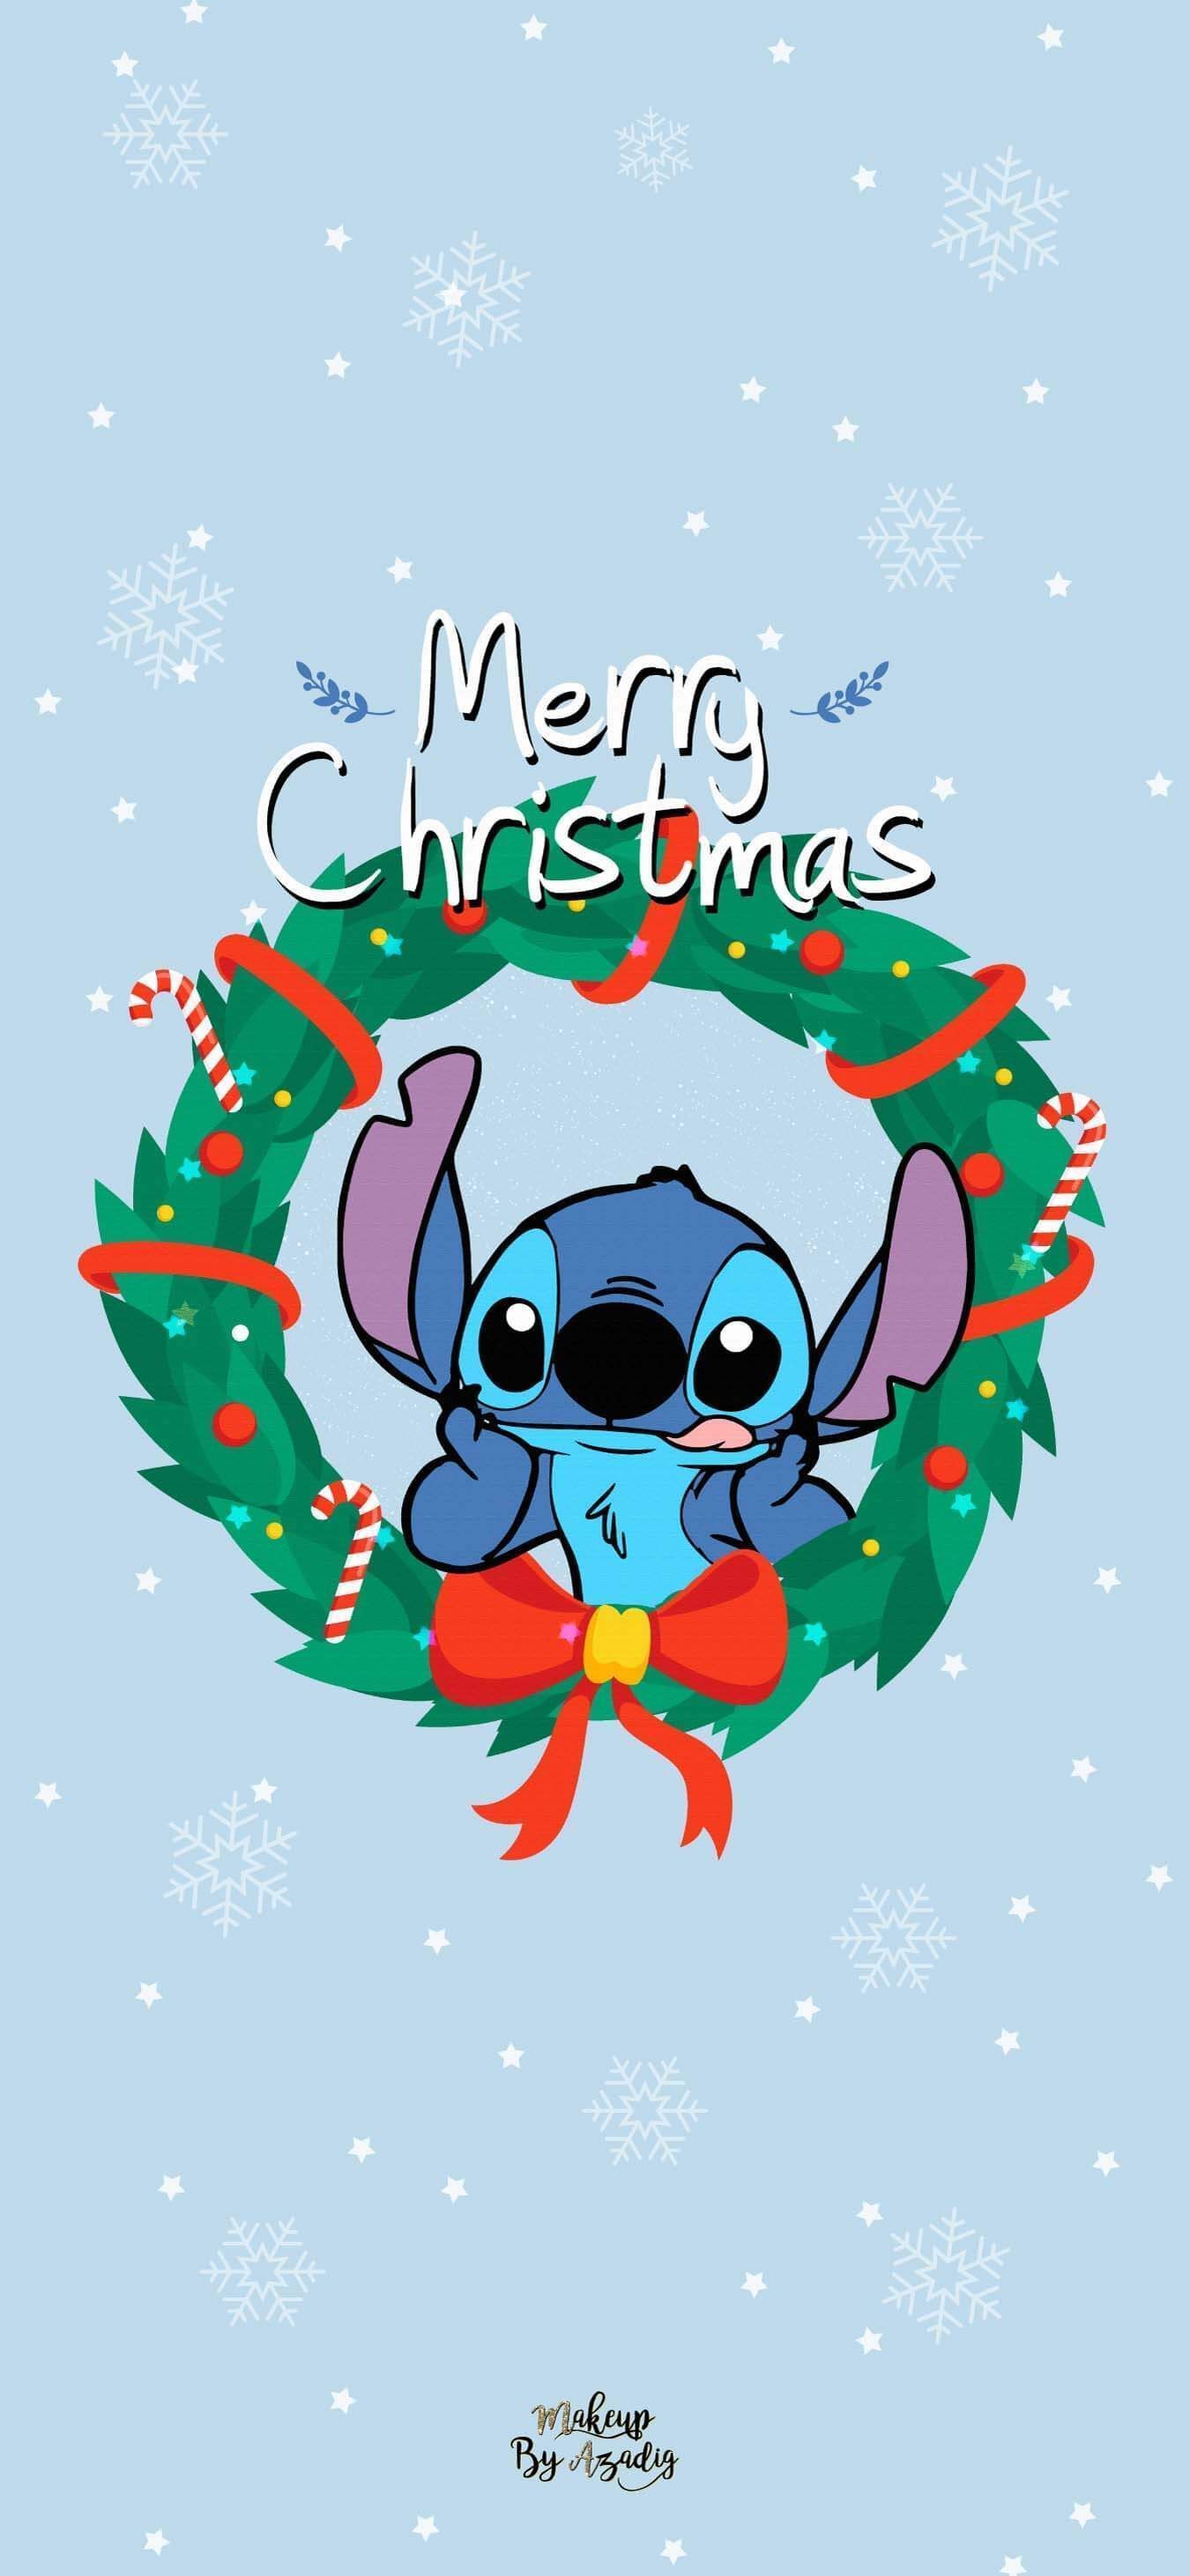 Stitch Christmas: Mùa lễ hội đang đến rất gần, hãy cùng xem hình vẽ về Stitch trong bộ đồ Giáng Sinh đáng yêu để thấy bầu không khí tươi vui đang tràn ngập khắp nơi. Những ngôi sao lấp lánh và chiếc mũ Santa trên đầu càng khiến cho Stitch trông đáng yêu hơn bao giờ hết.